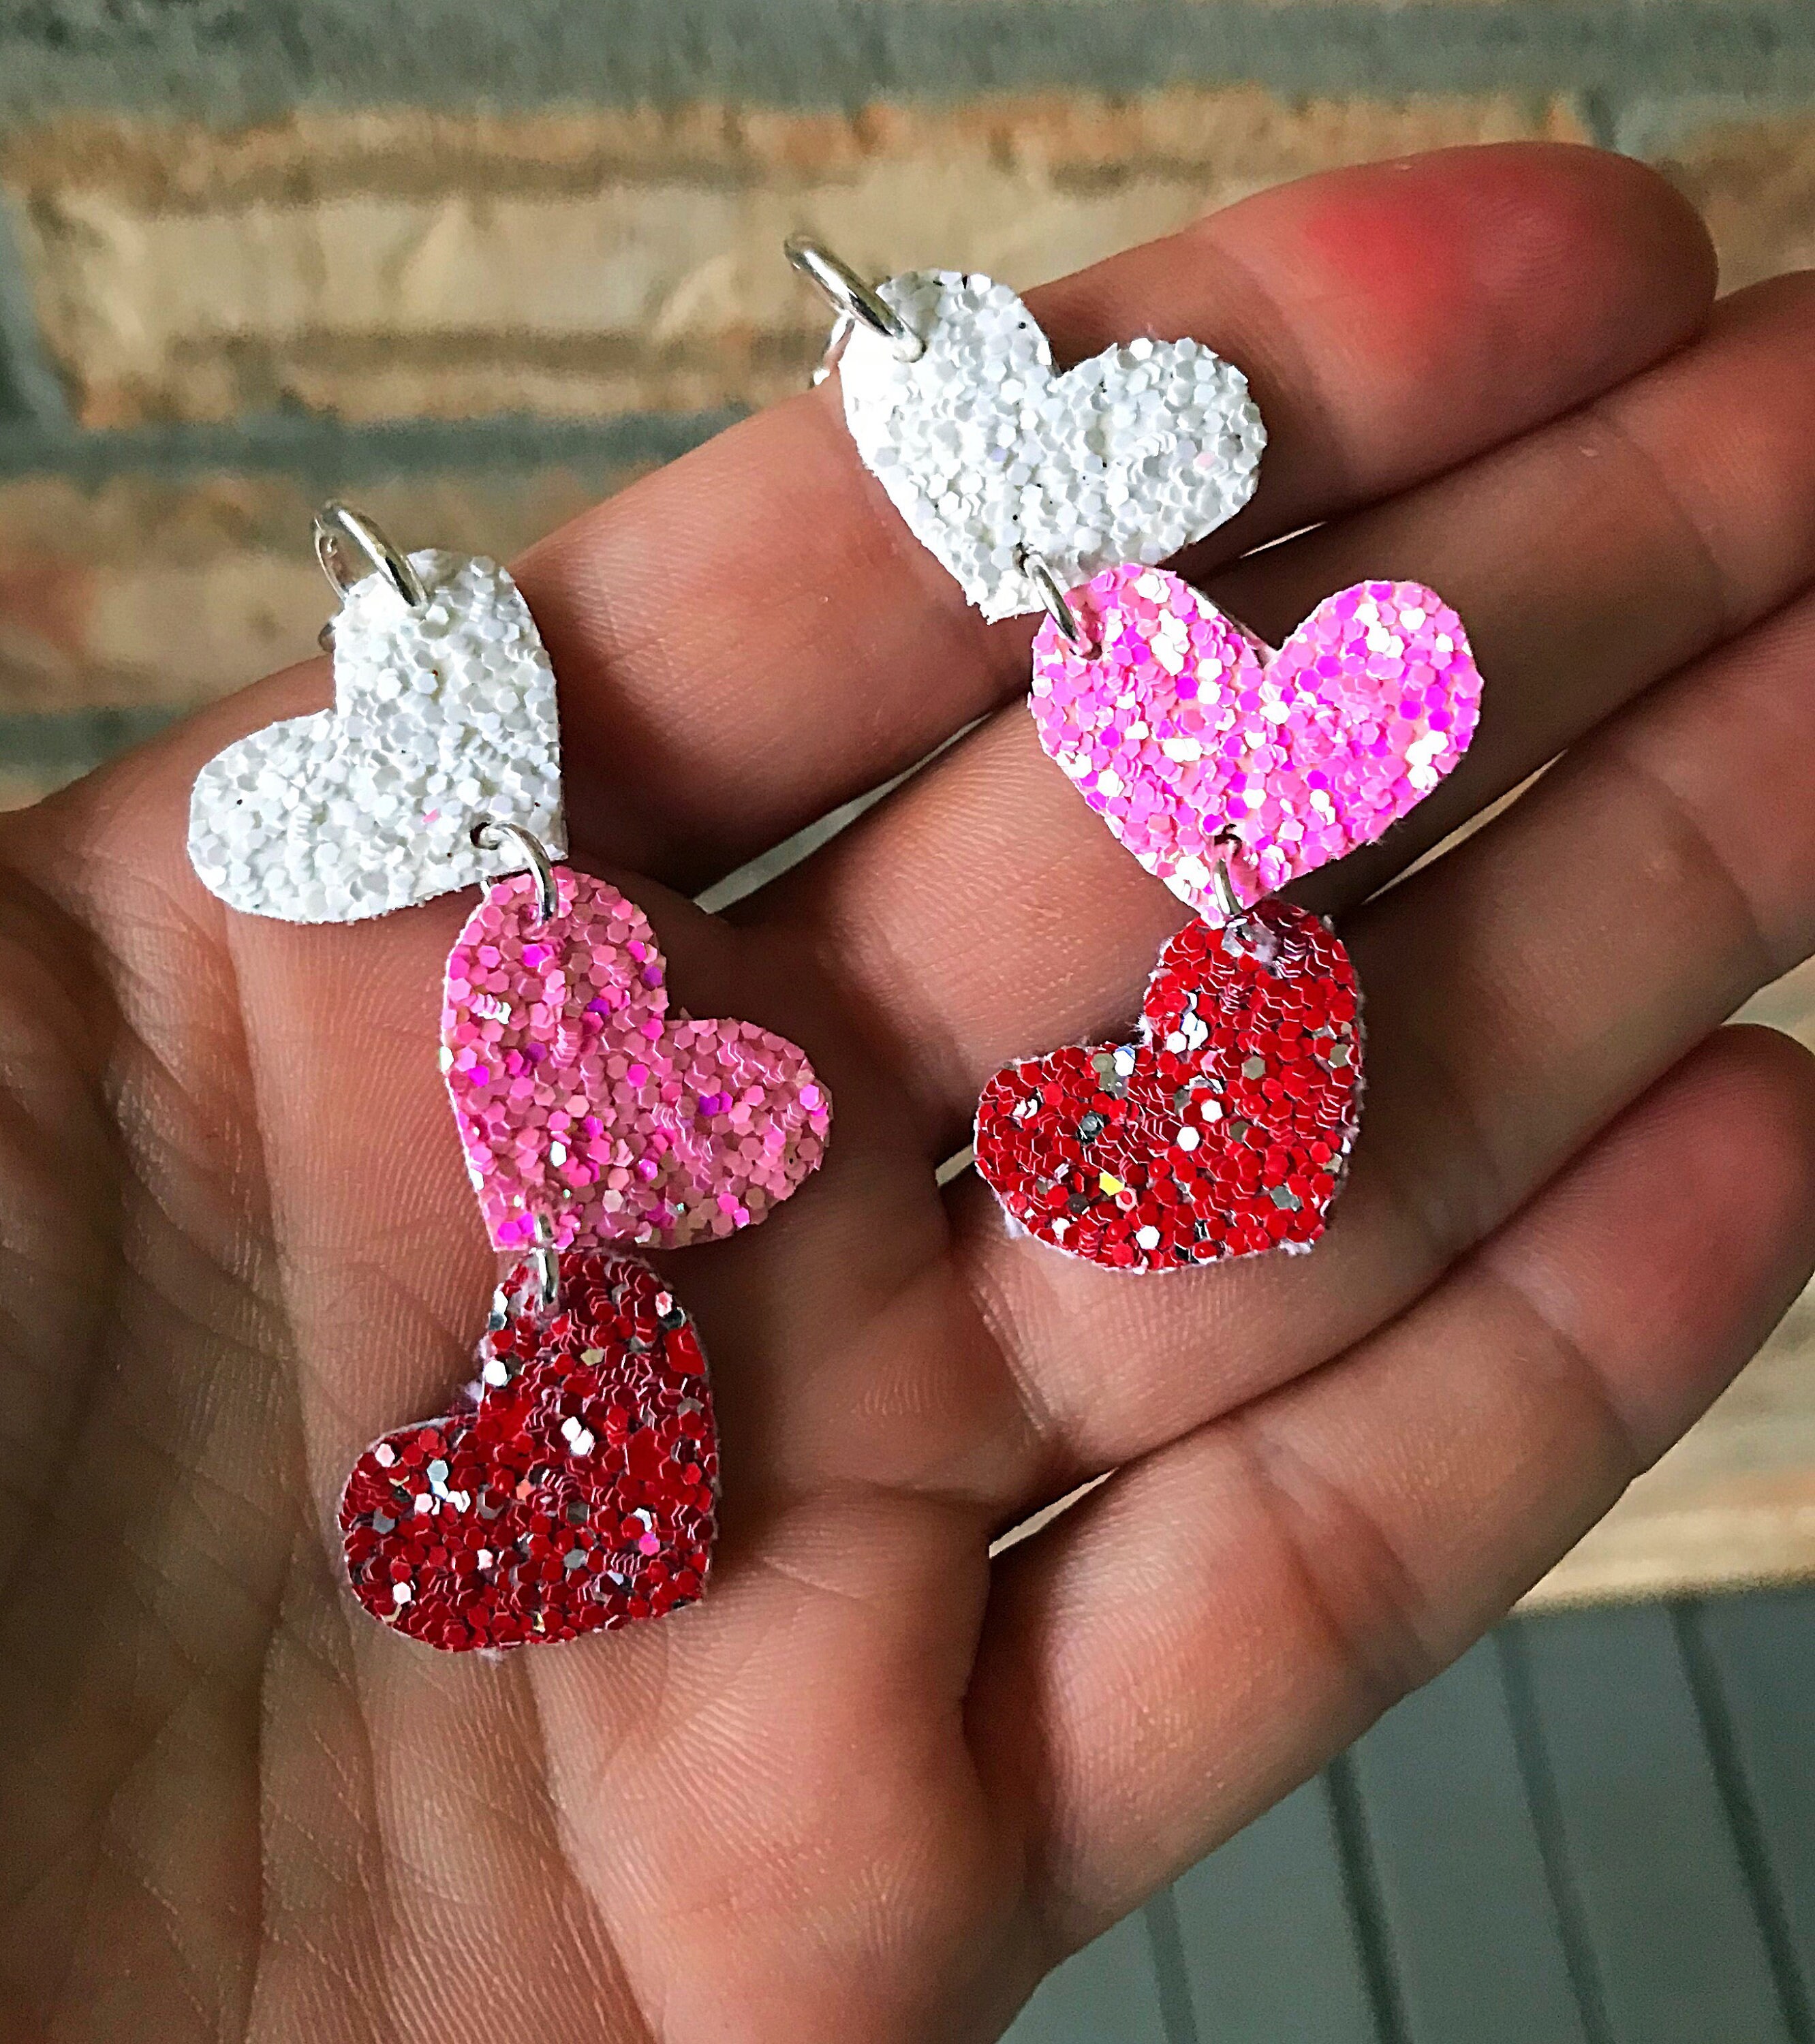 Heiheiup Valentine's Day Red Love Drop Earrings Double Sided Wooden Earrings  To Wear Decorative Girls Gifts Women Earrings Dangle 